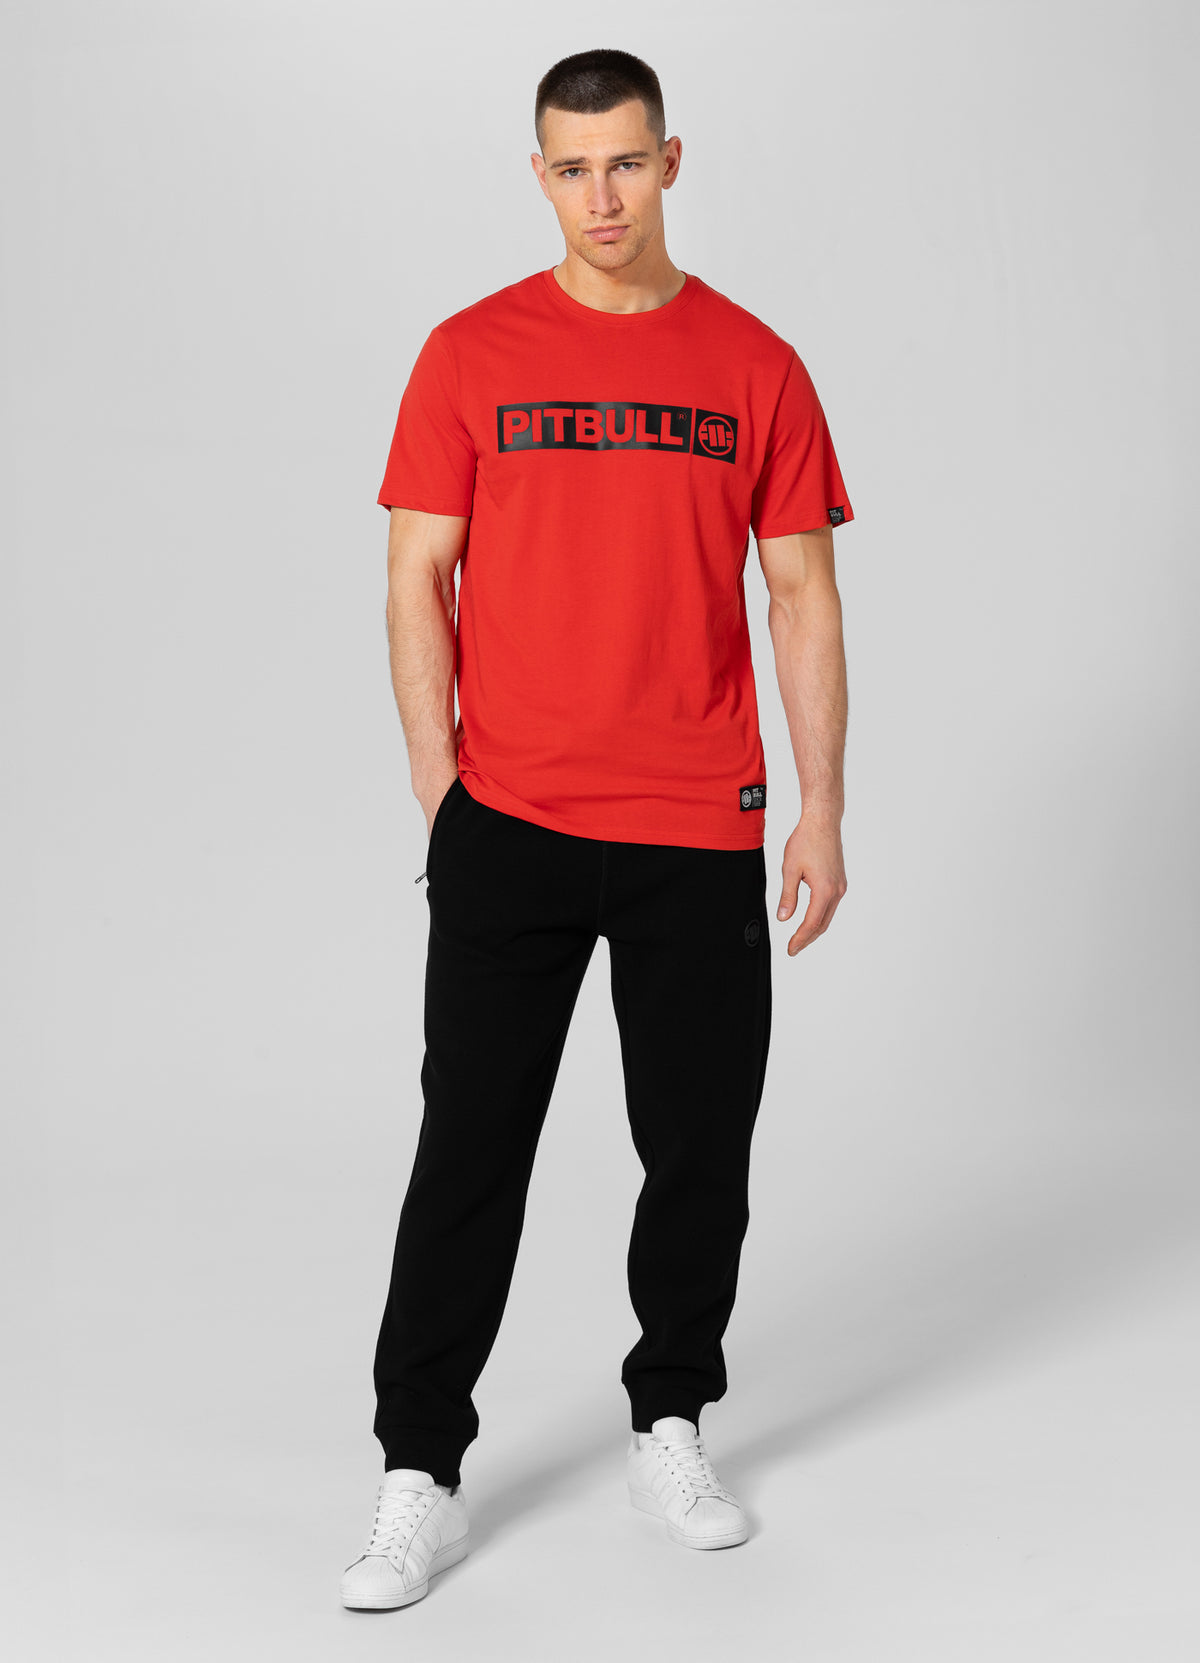 HILLTOP Lightweight Flame Red T-shirt - Pitbullstore.eu